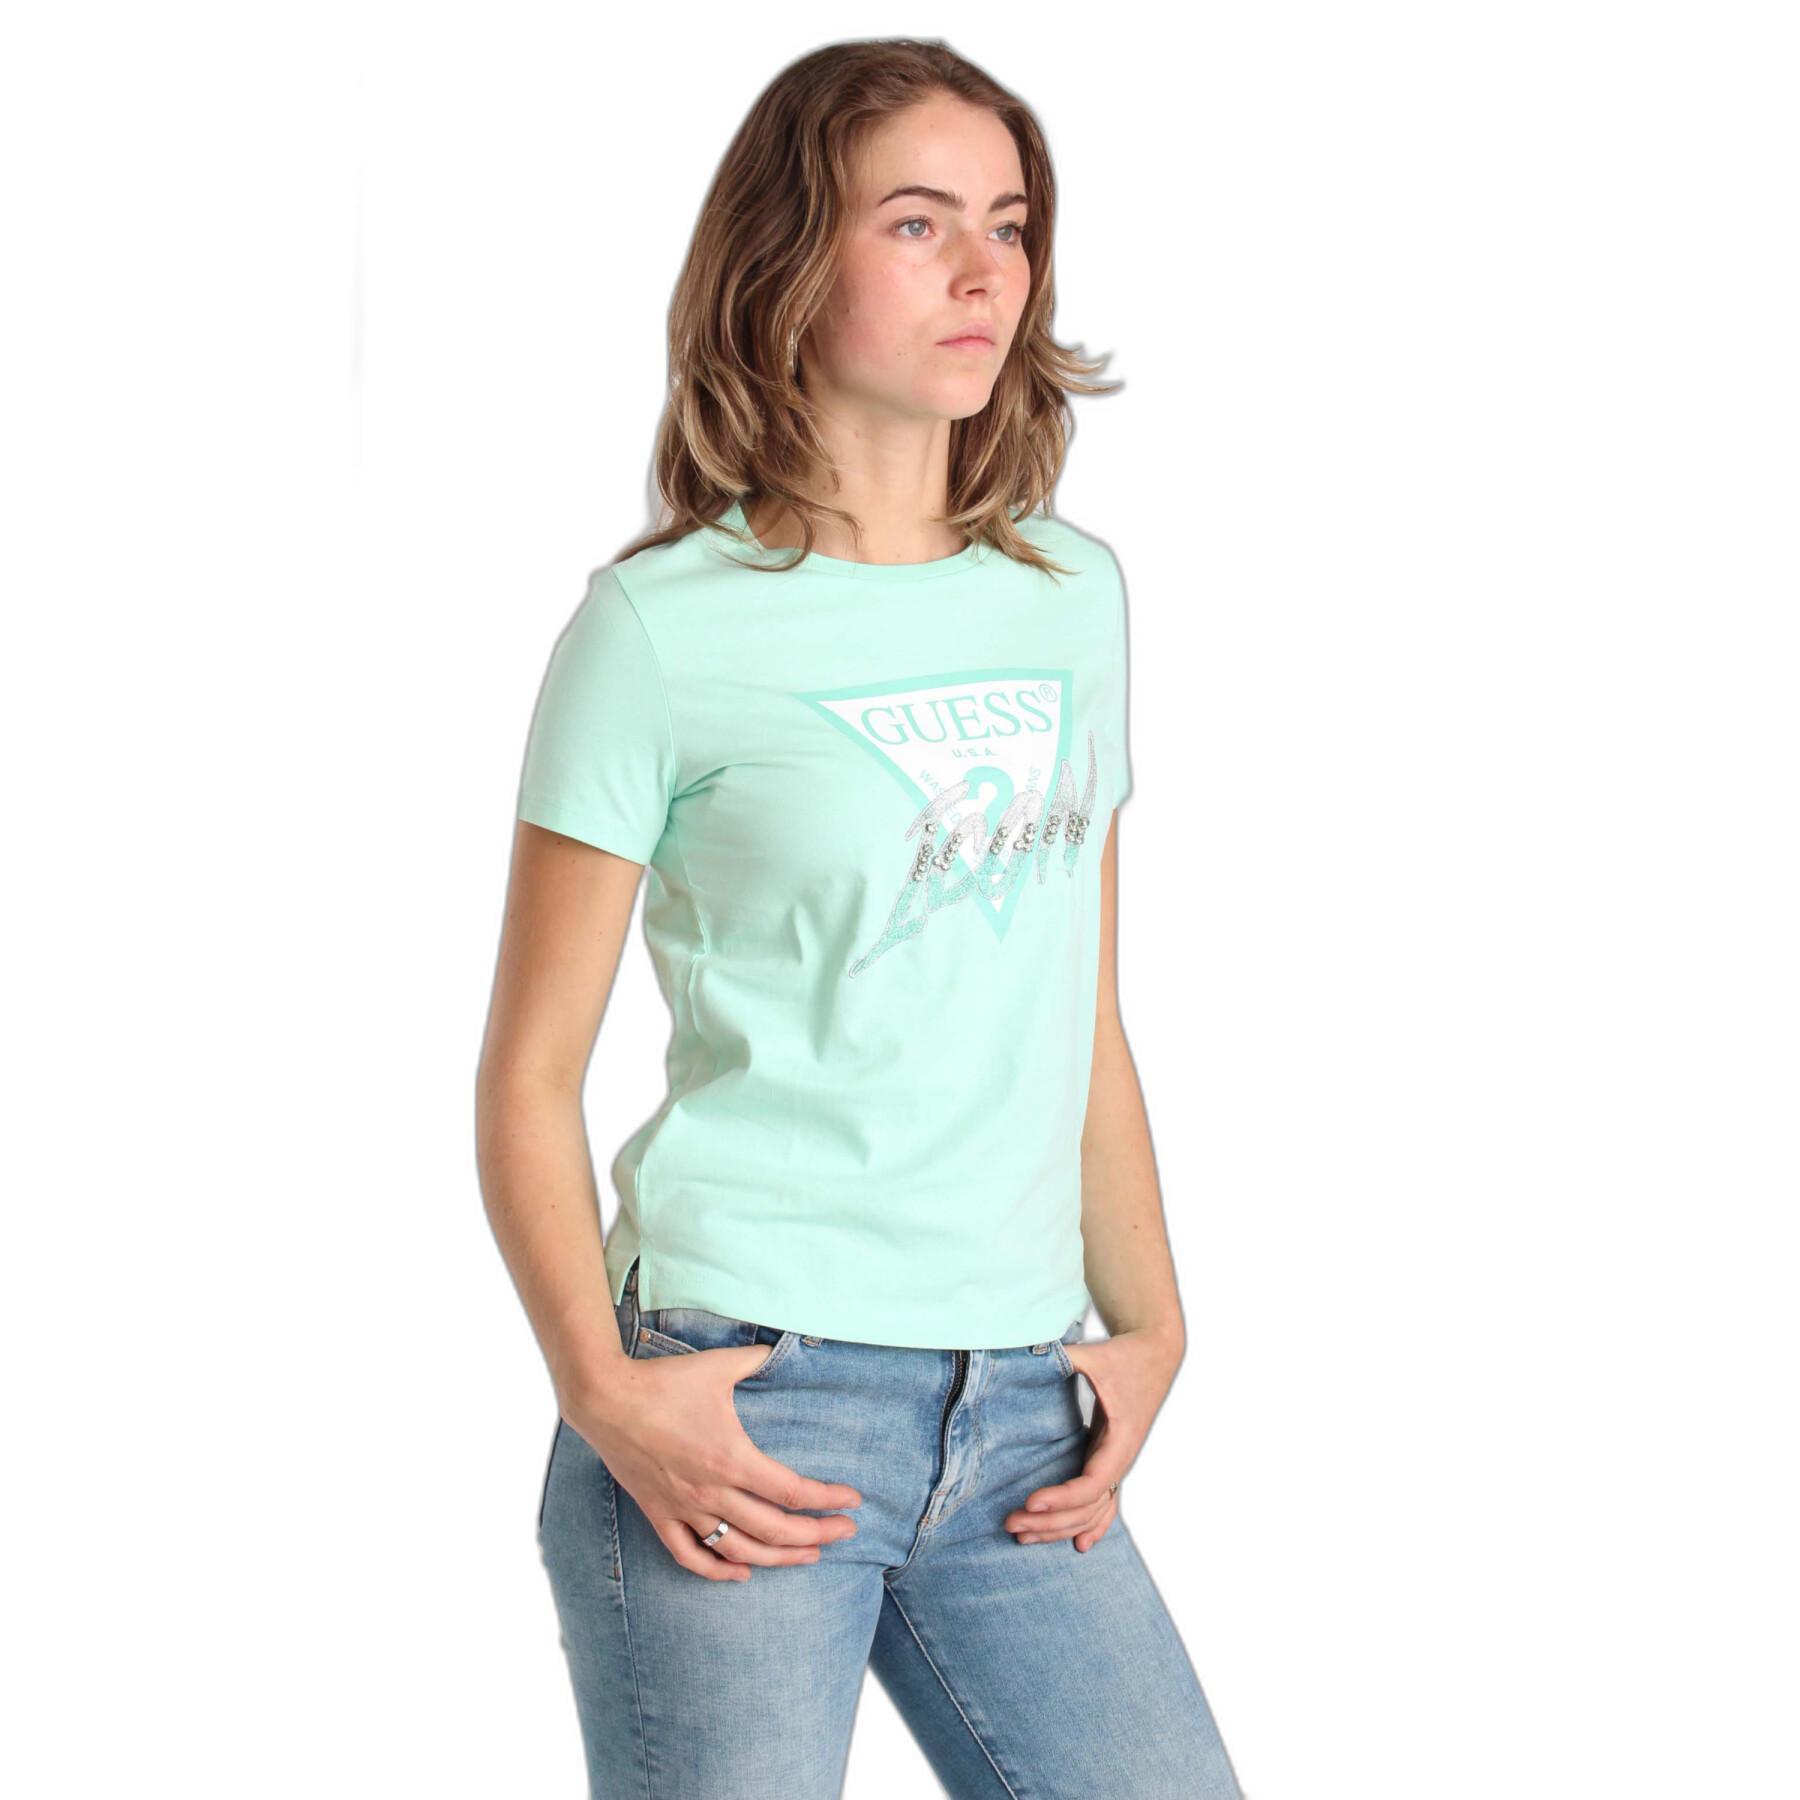 Kurzarm-T-Shirt, Damen Guess Cn Icon